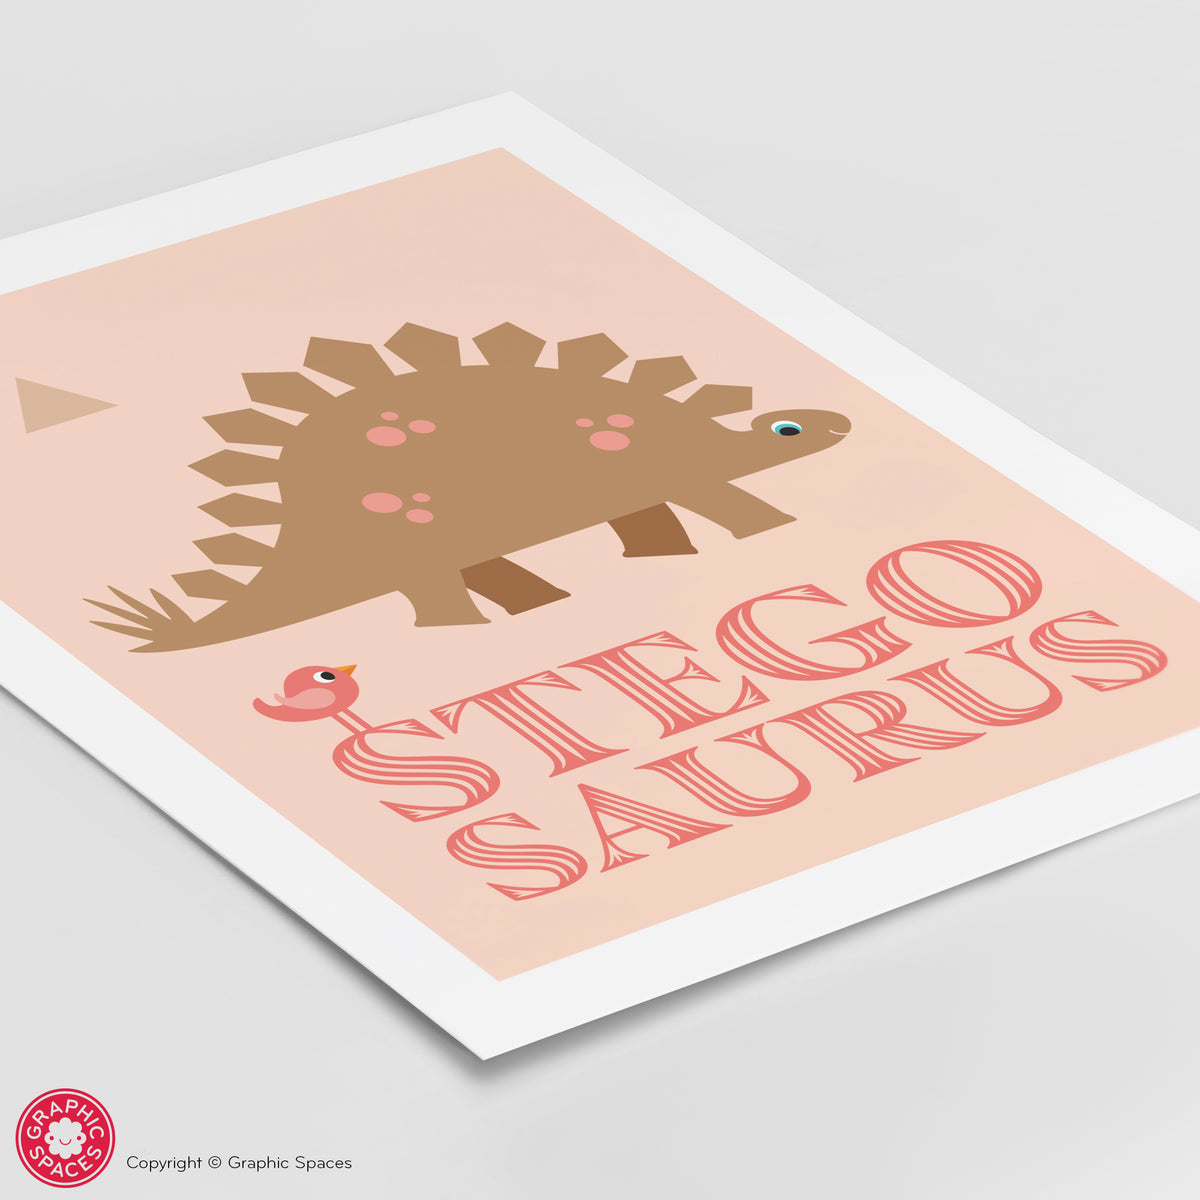 Stegosaurus Art Print